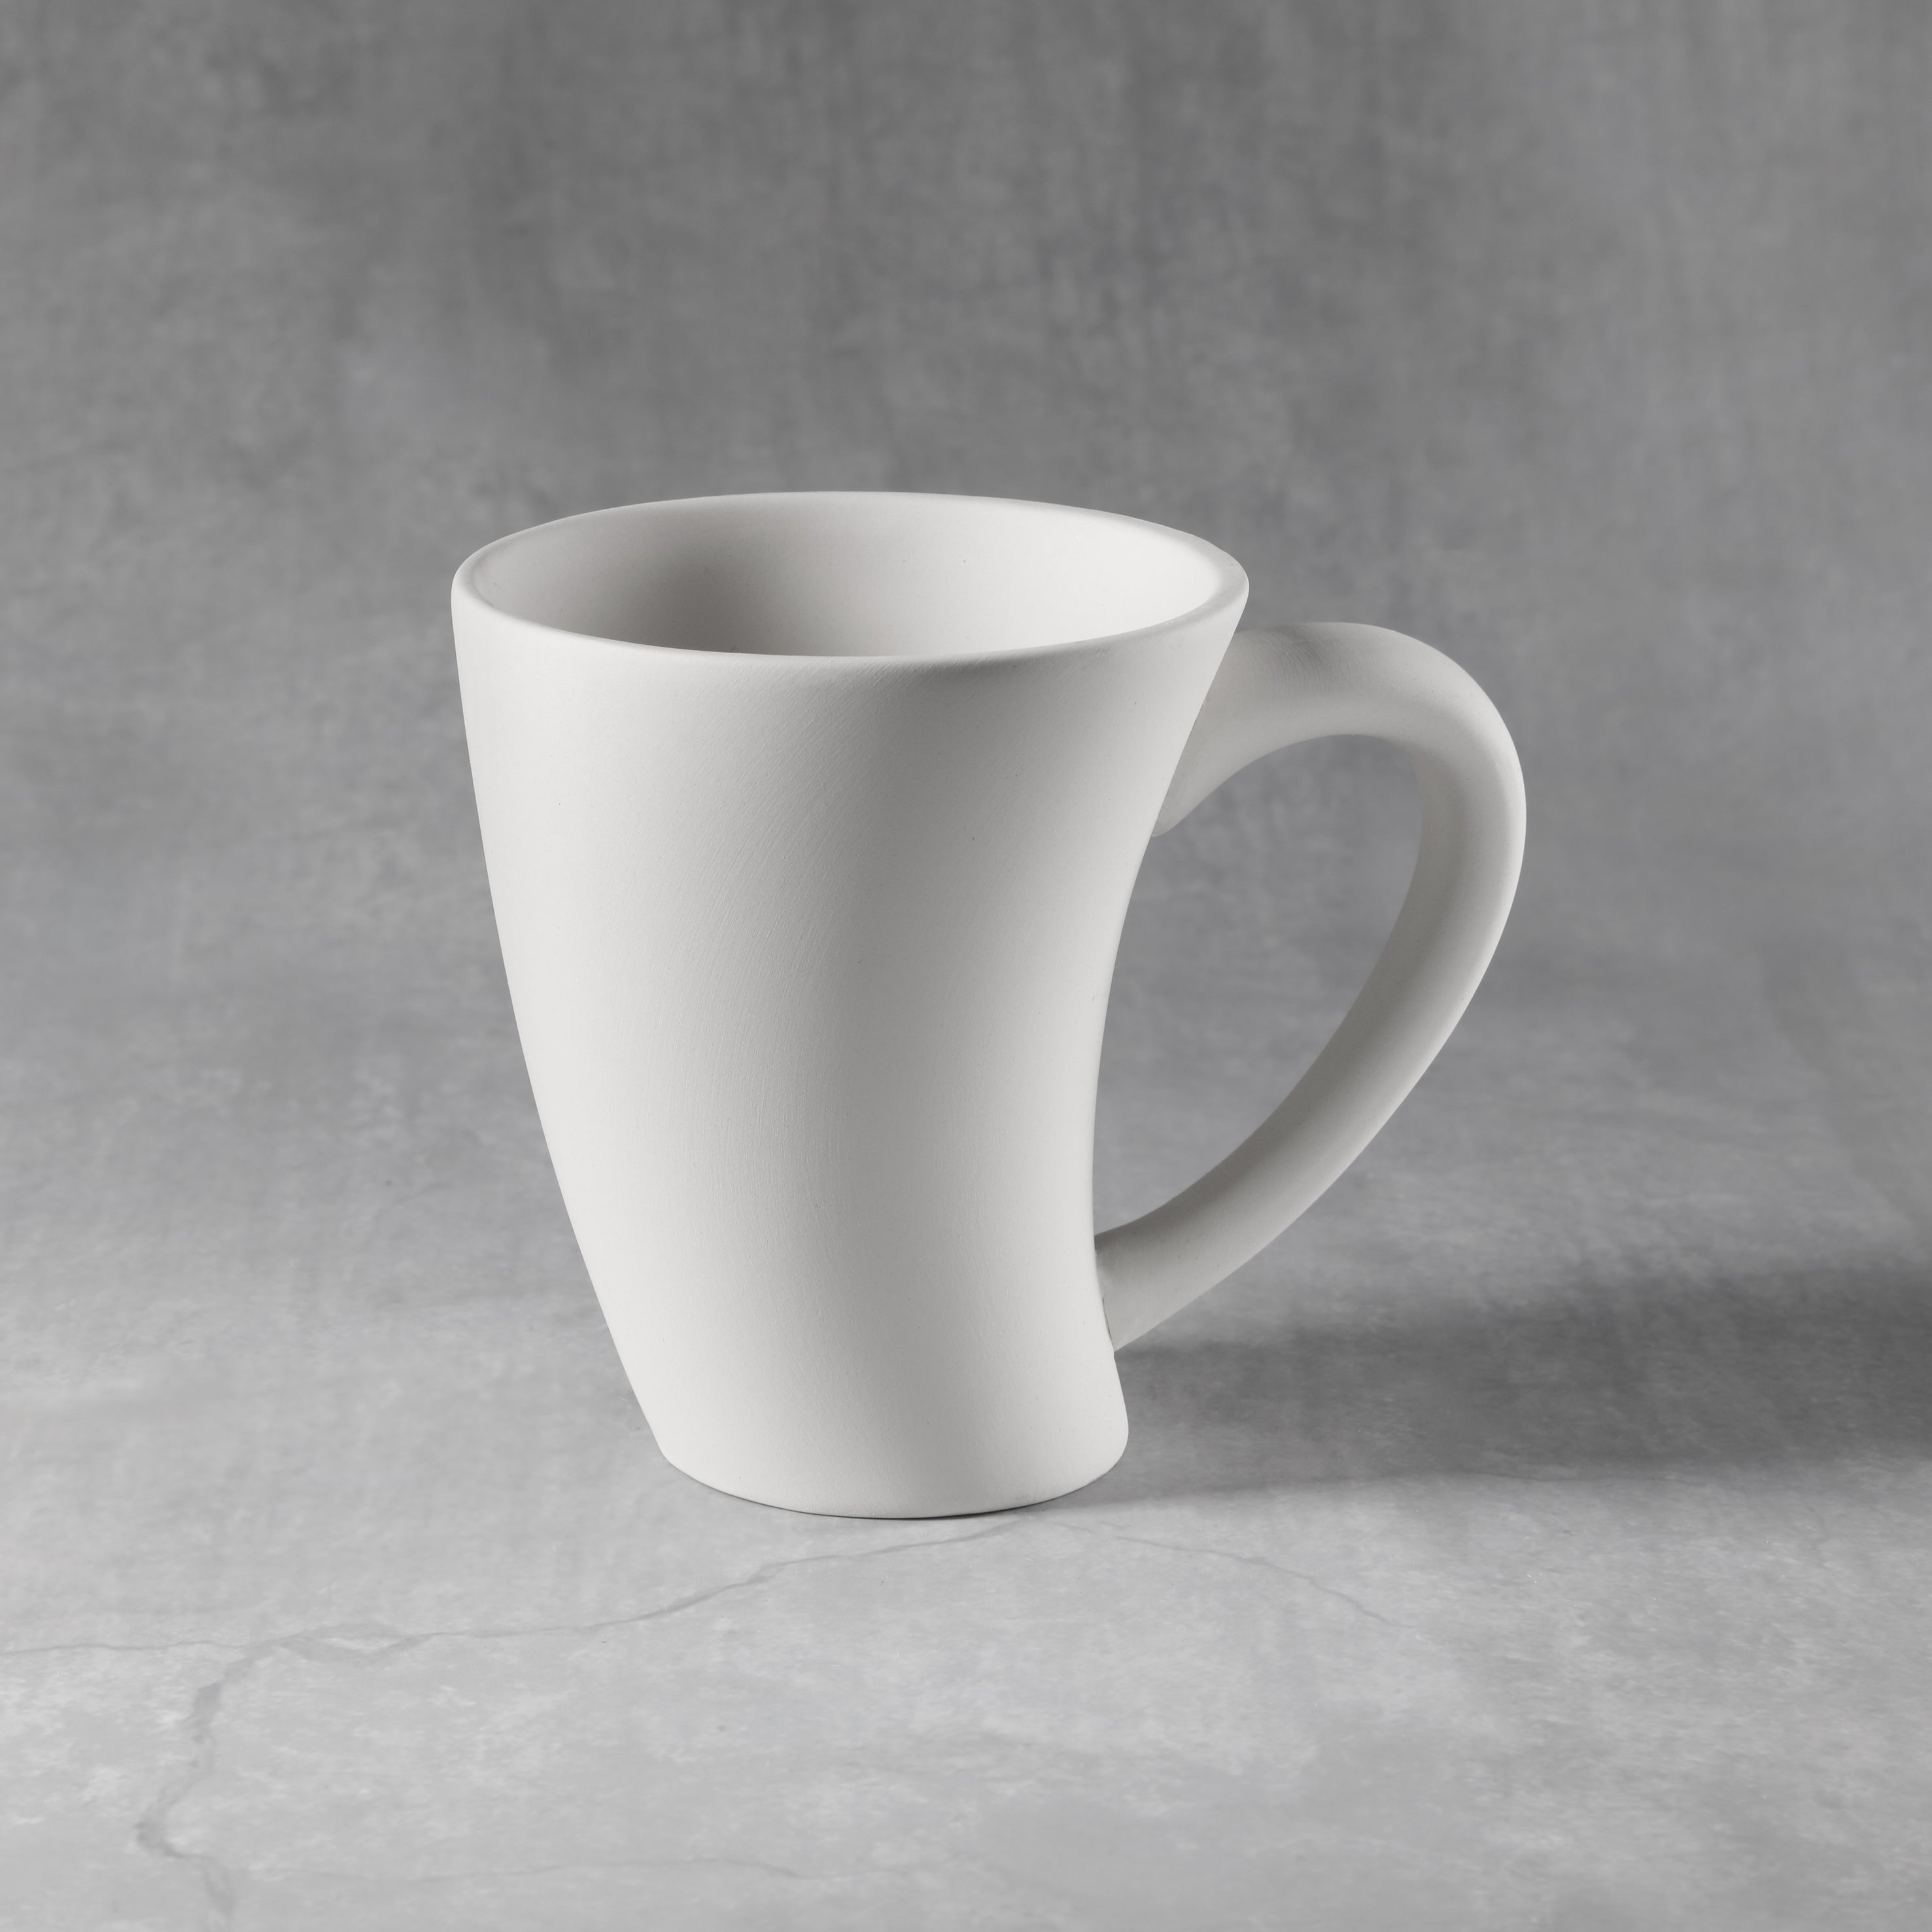 ccx084 Leaning Whimsical Mug